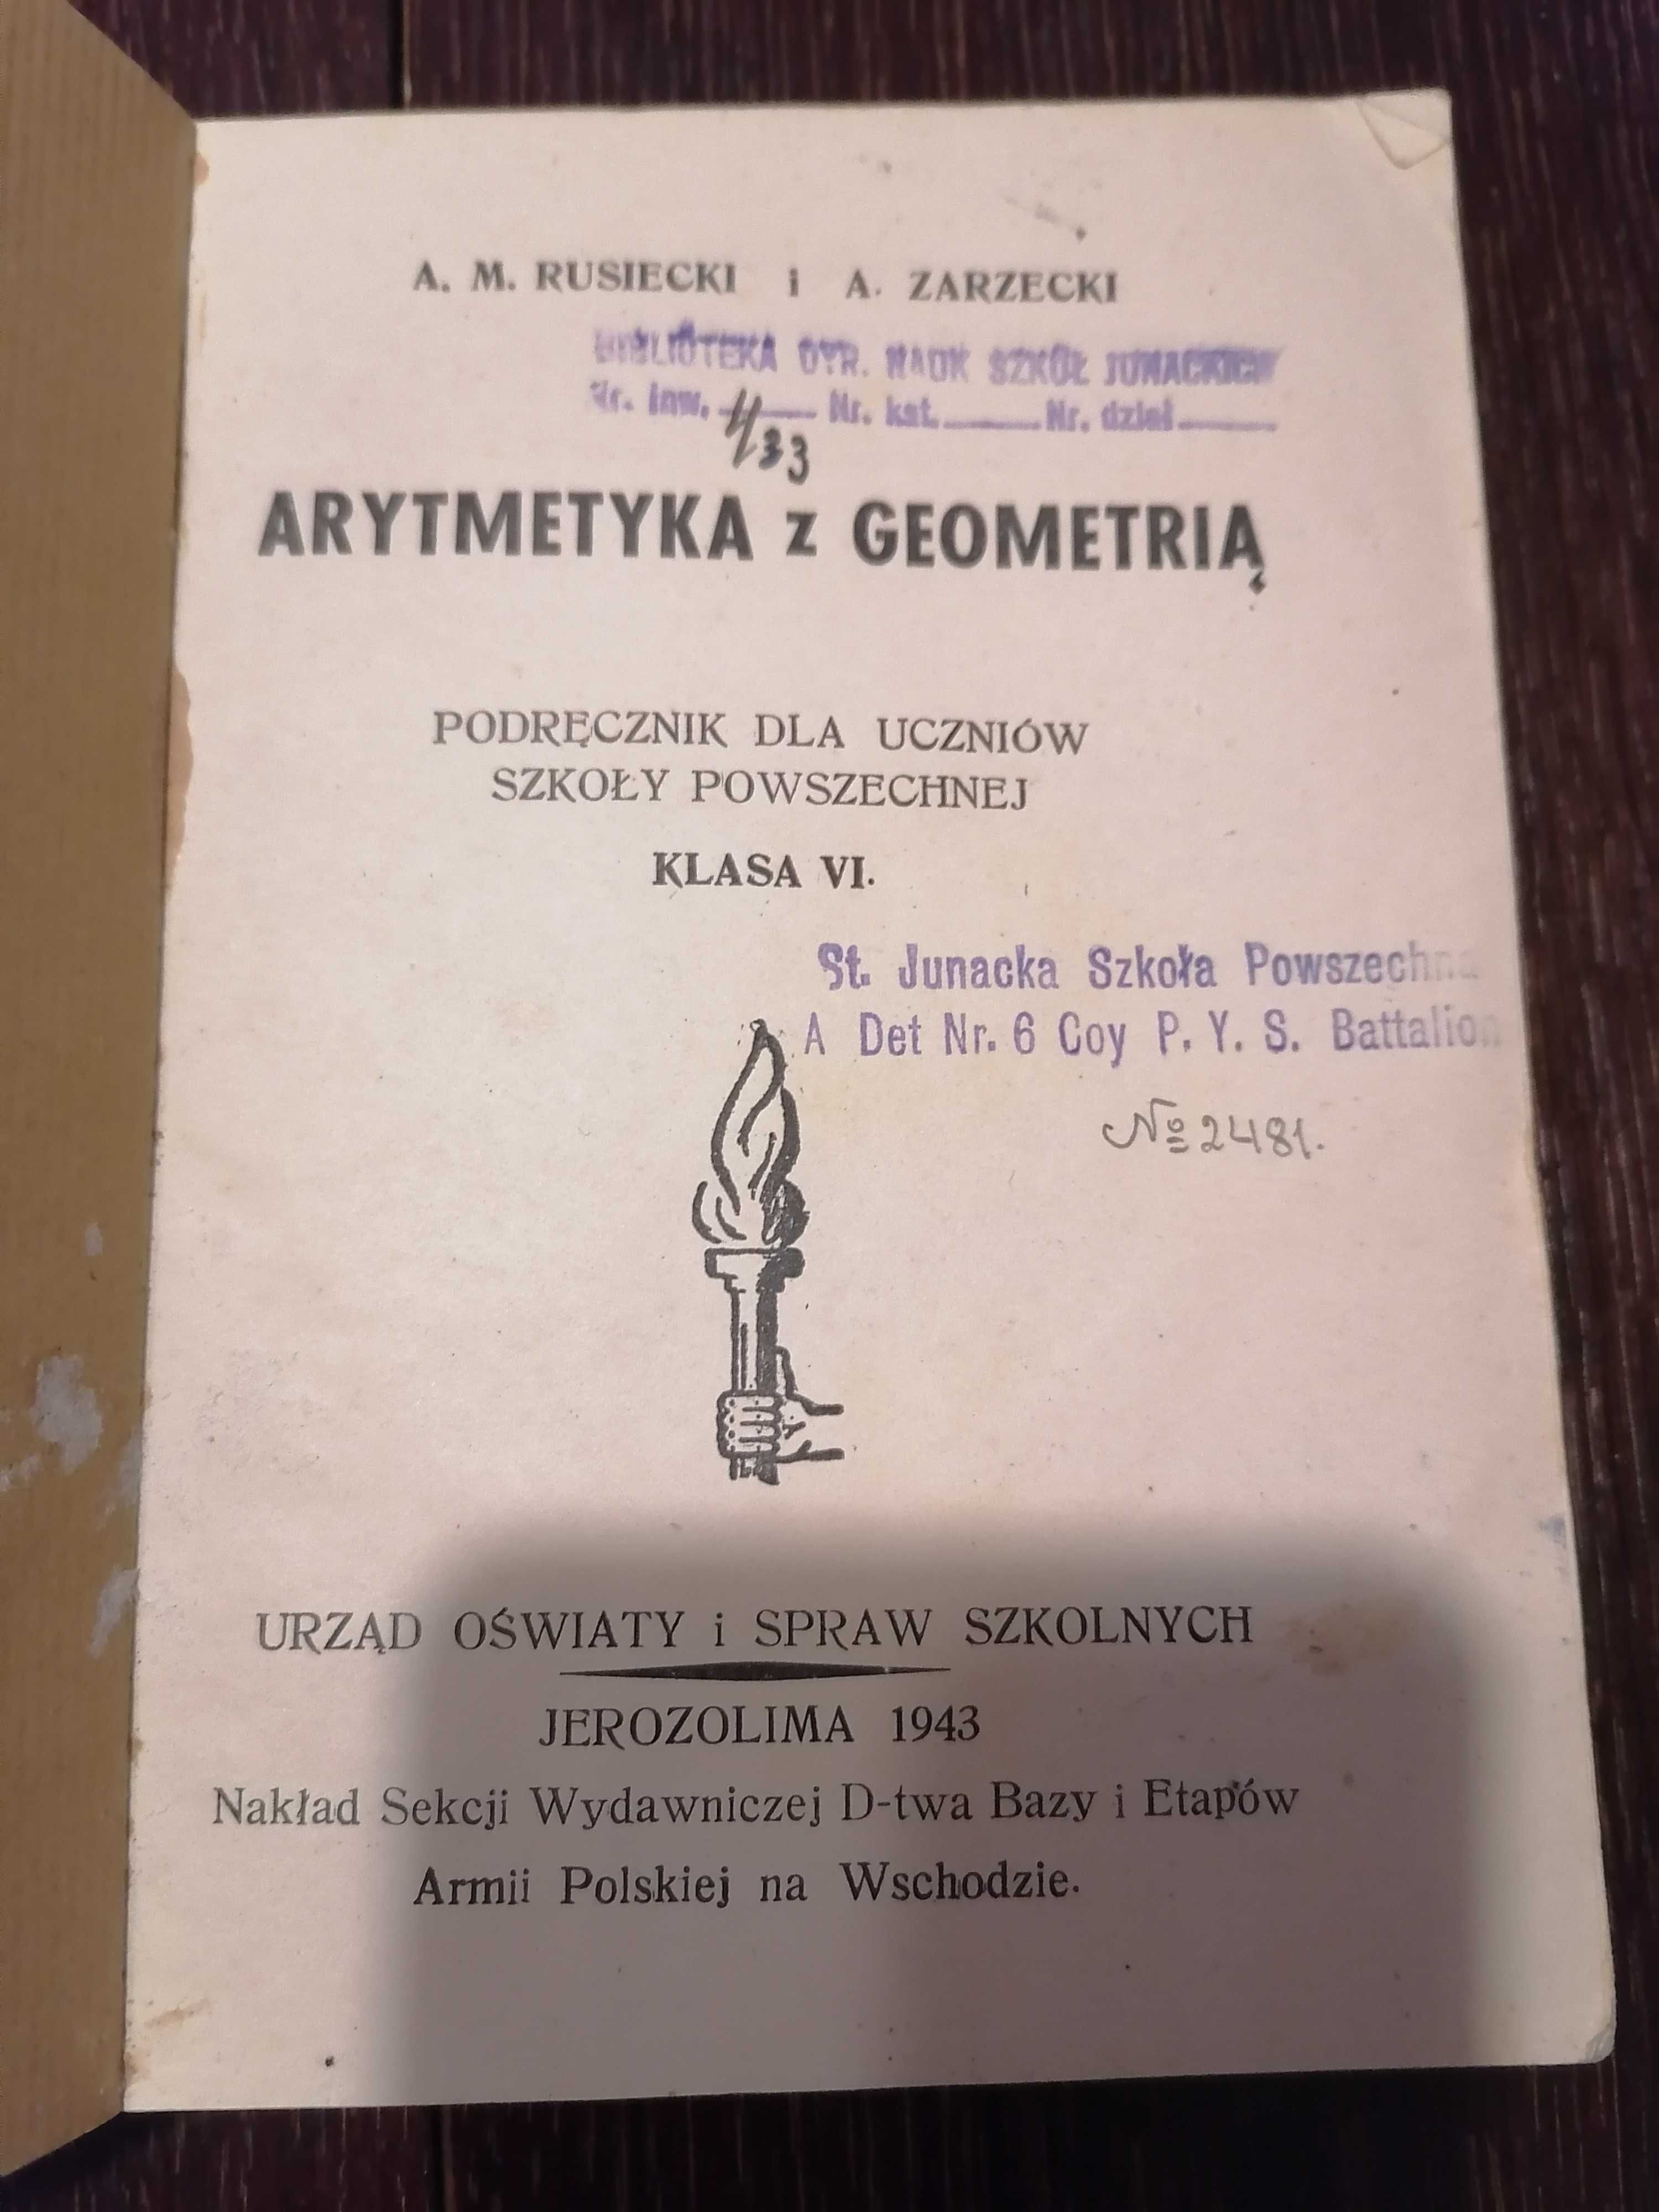 Rusiecki, Zarzecki, Arytmetyka z geometrią, 1943